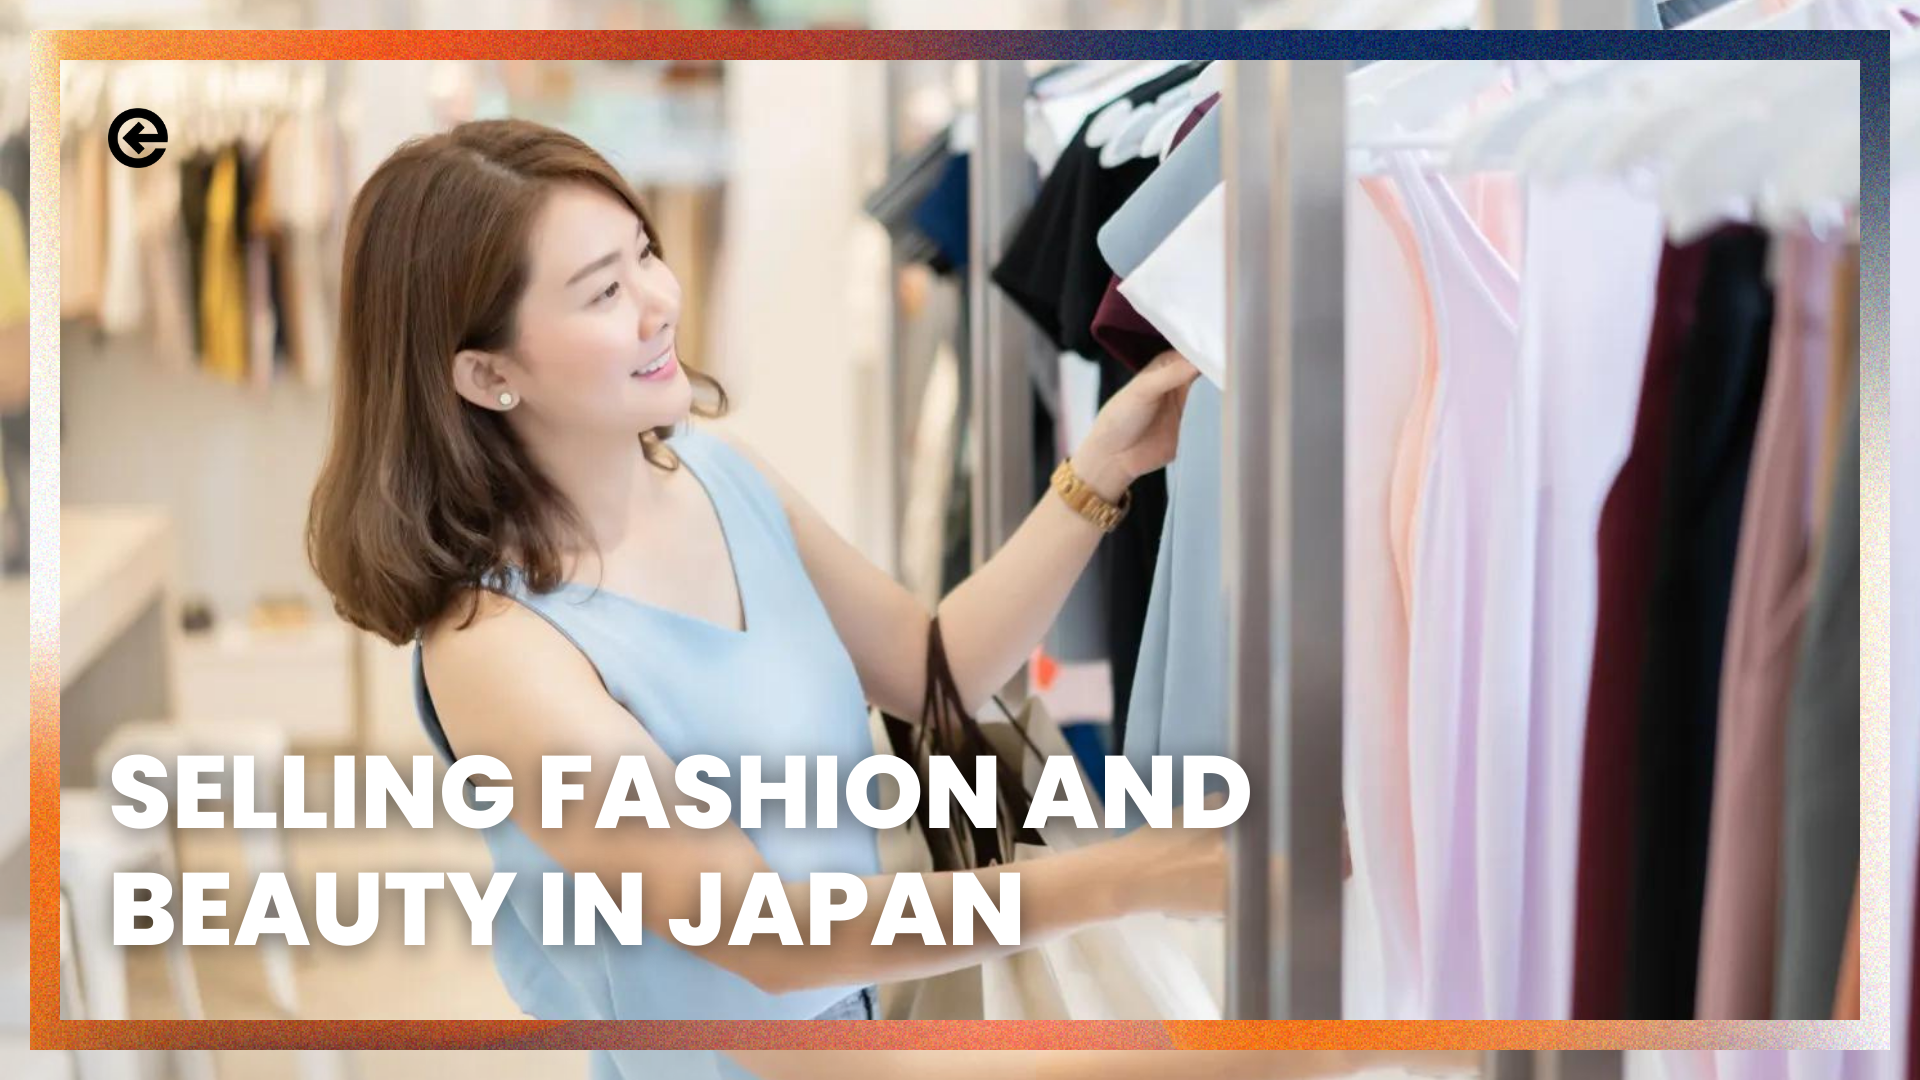 जापान में फैशन और सौंदर्य बेचना